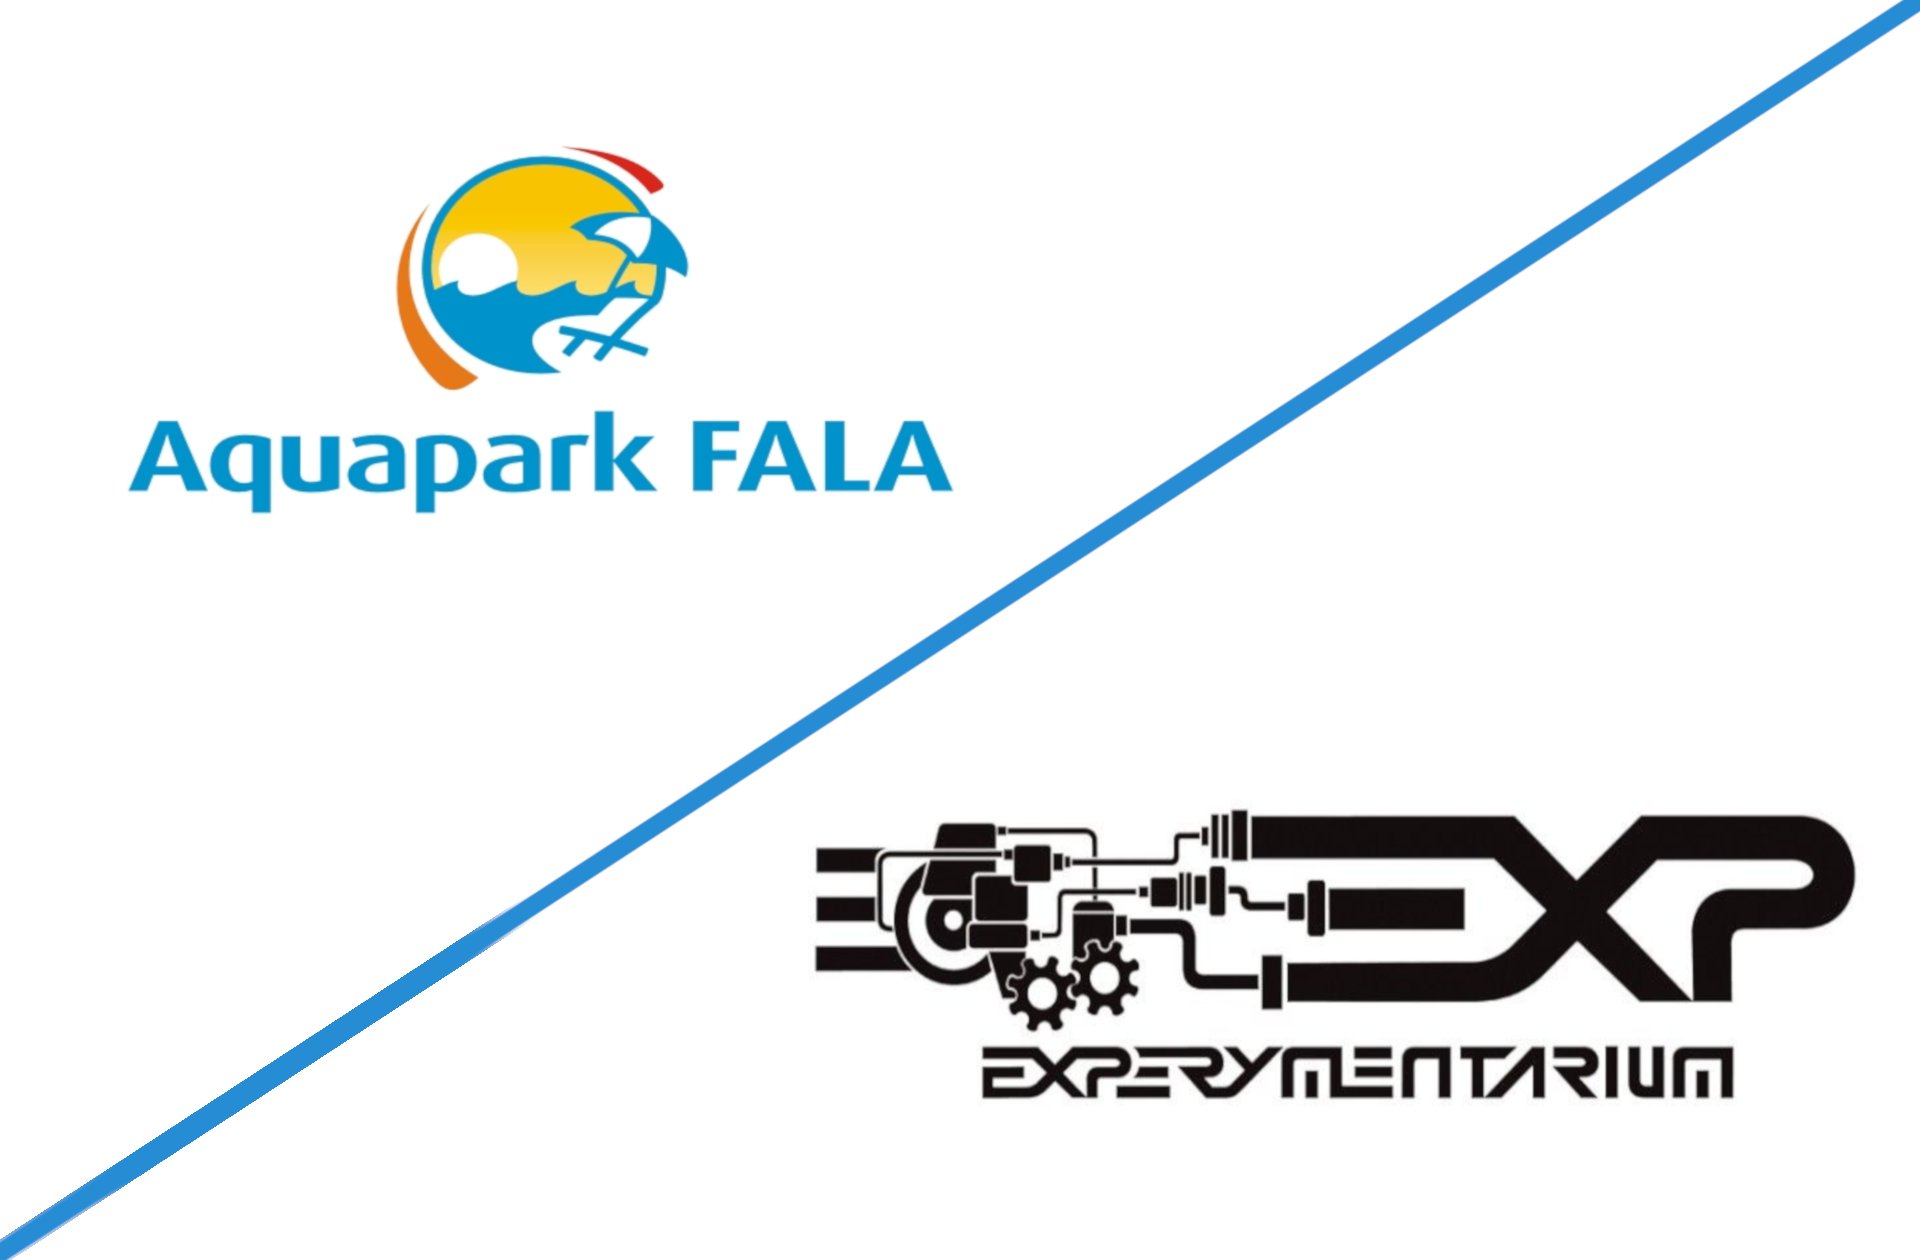 Logotypy Aquaparku FALA oraz Experymentarium. , Logotypy Aquaparku FALA oraz Experymentarium.